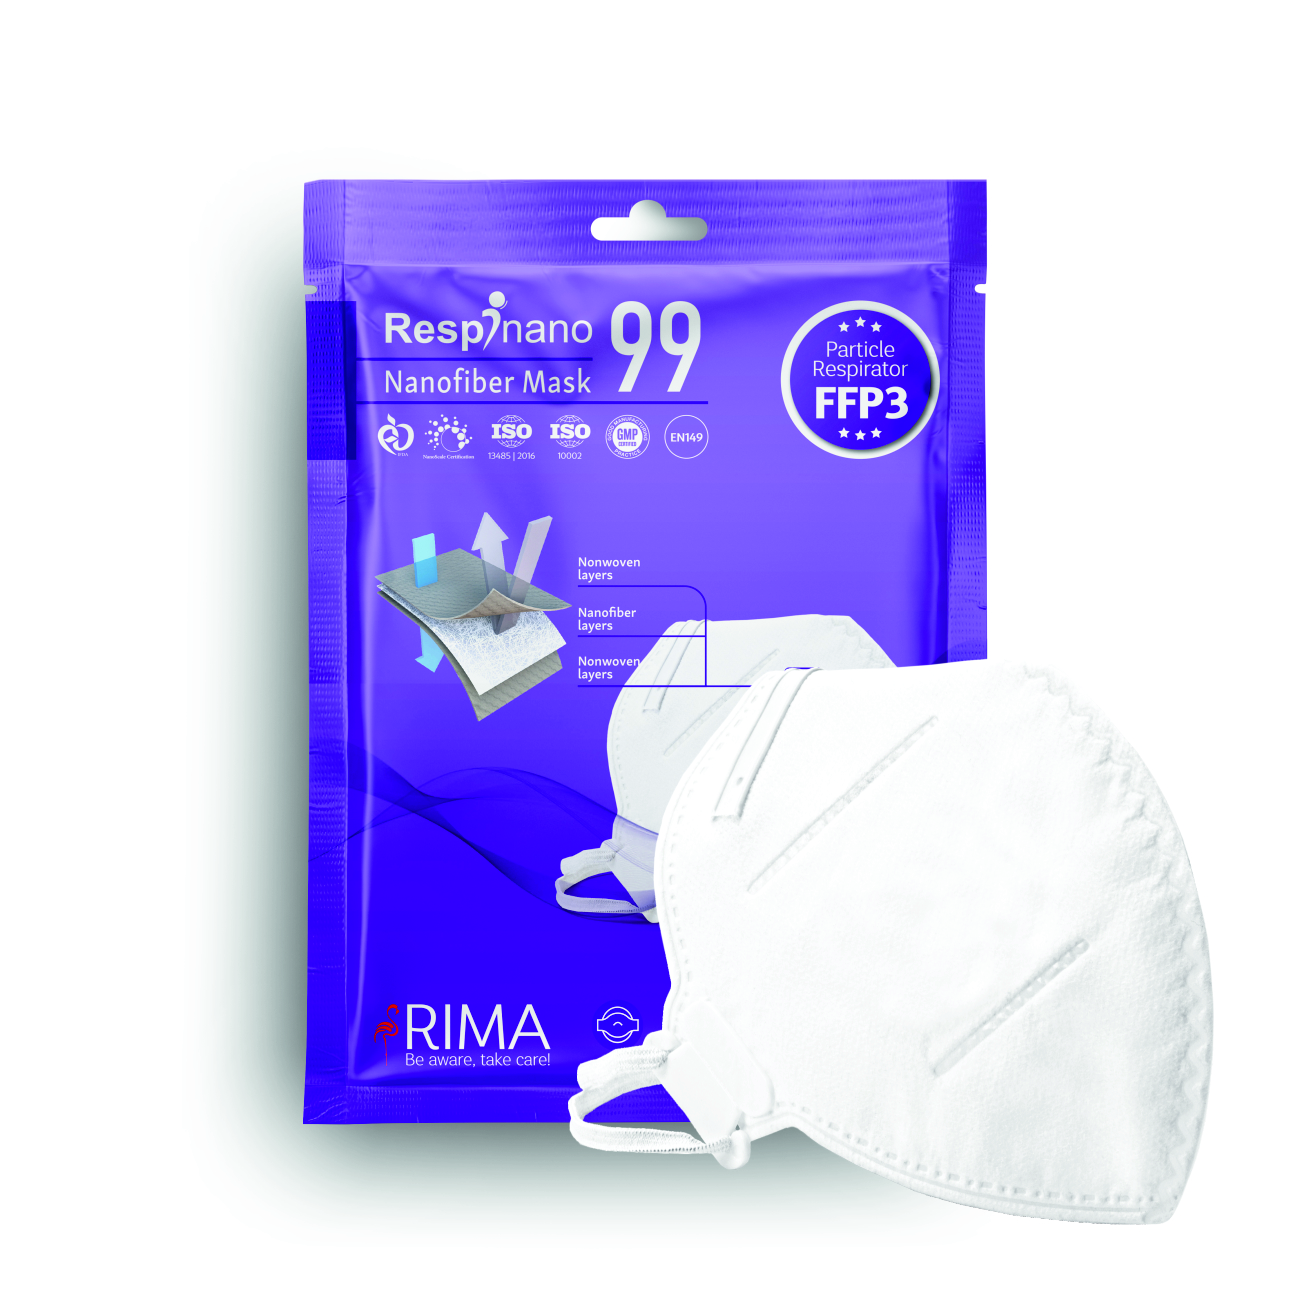 ماسک تنفسی ریما مدل بدون سوپاپ نانو FFP3-N99 بسته 10 عددی